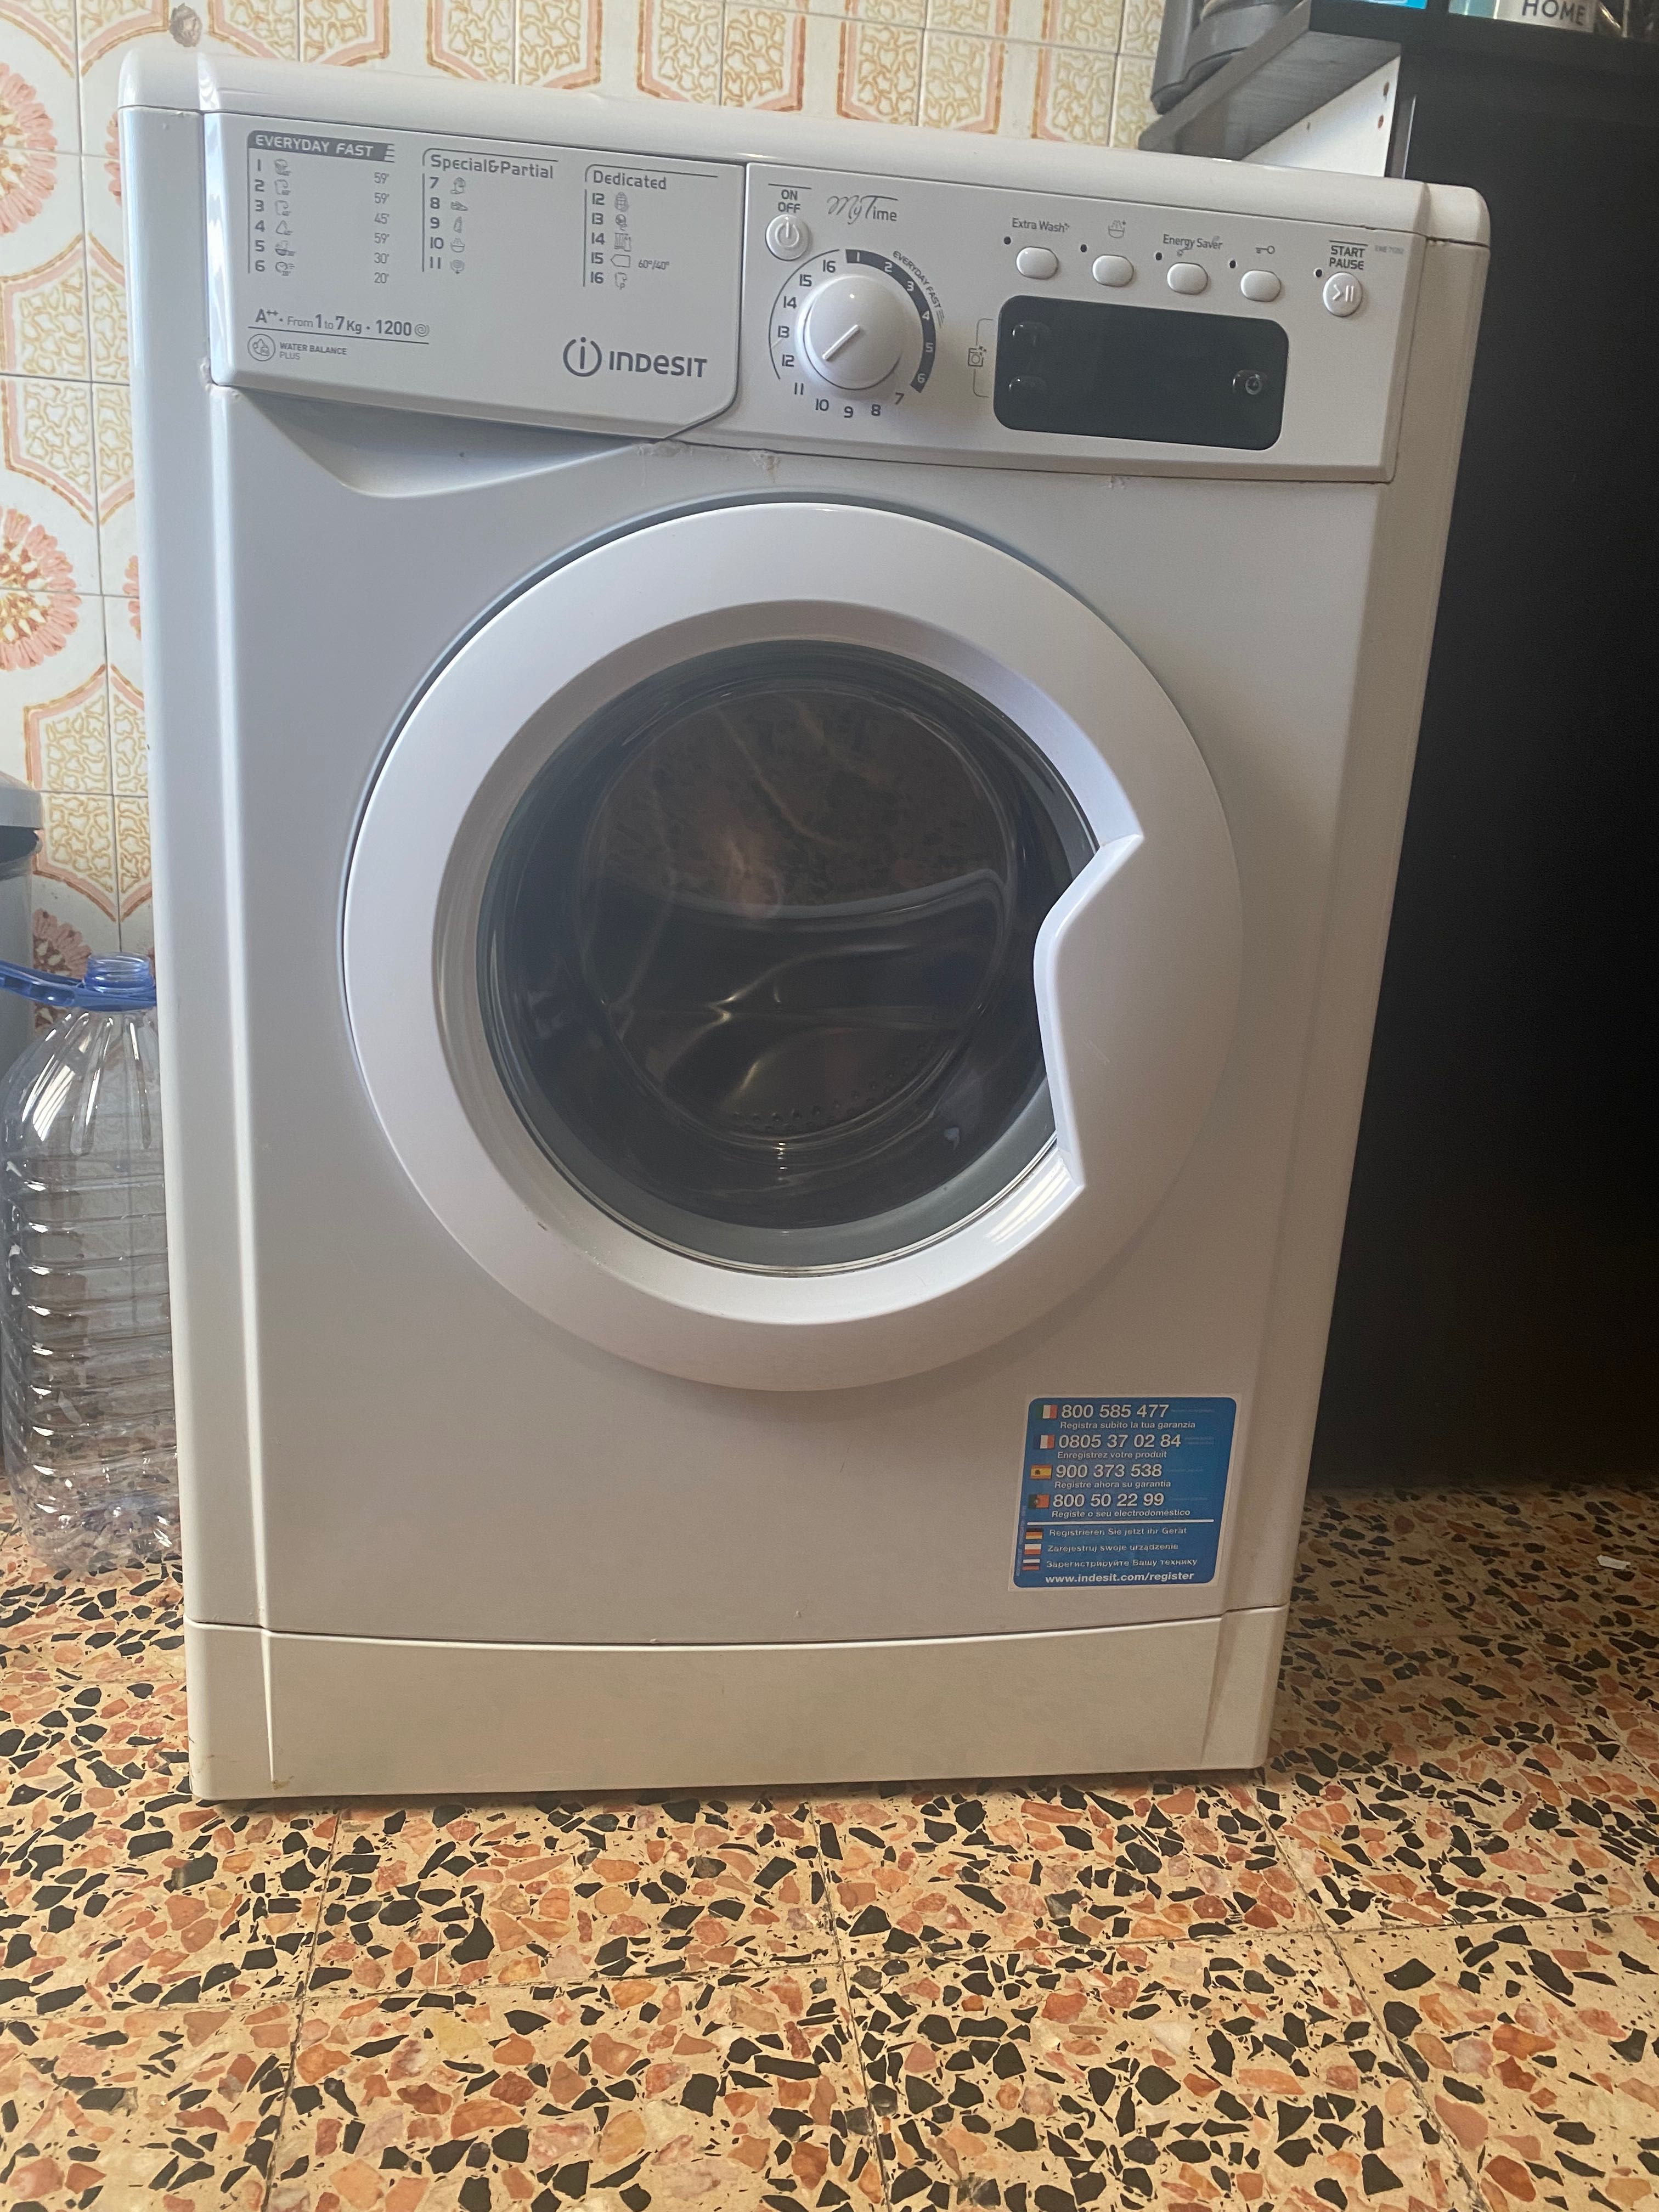 Máquina lavar roupa 7kg